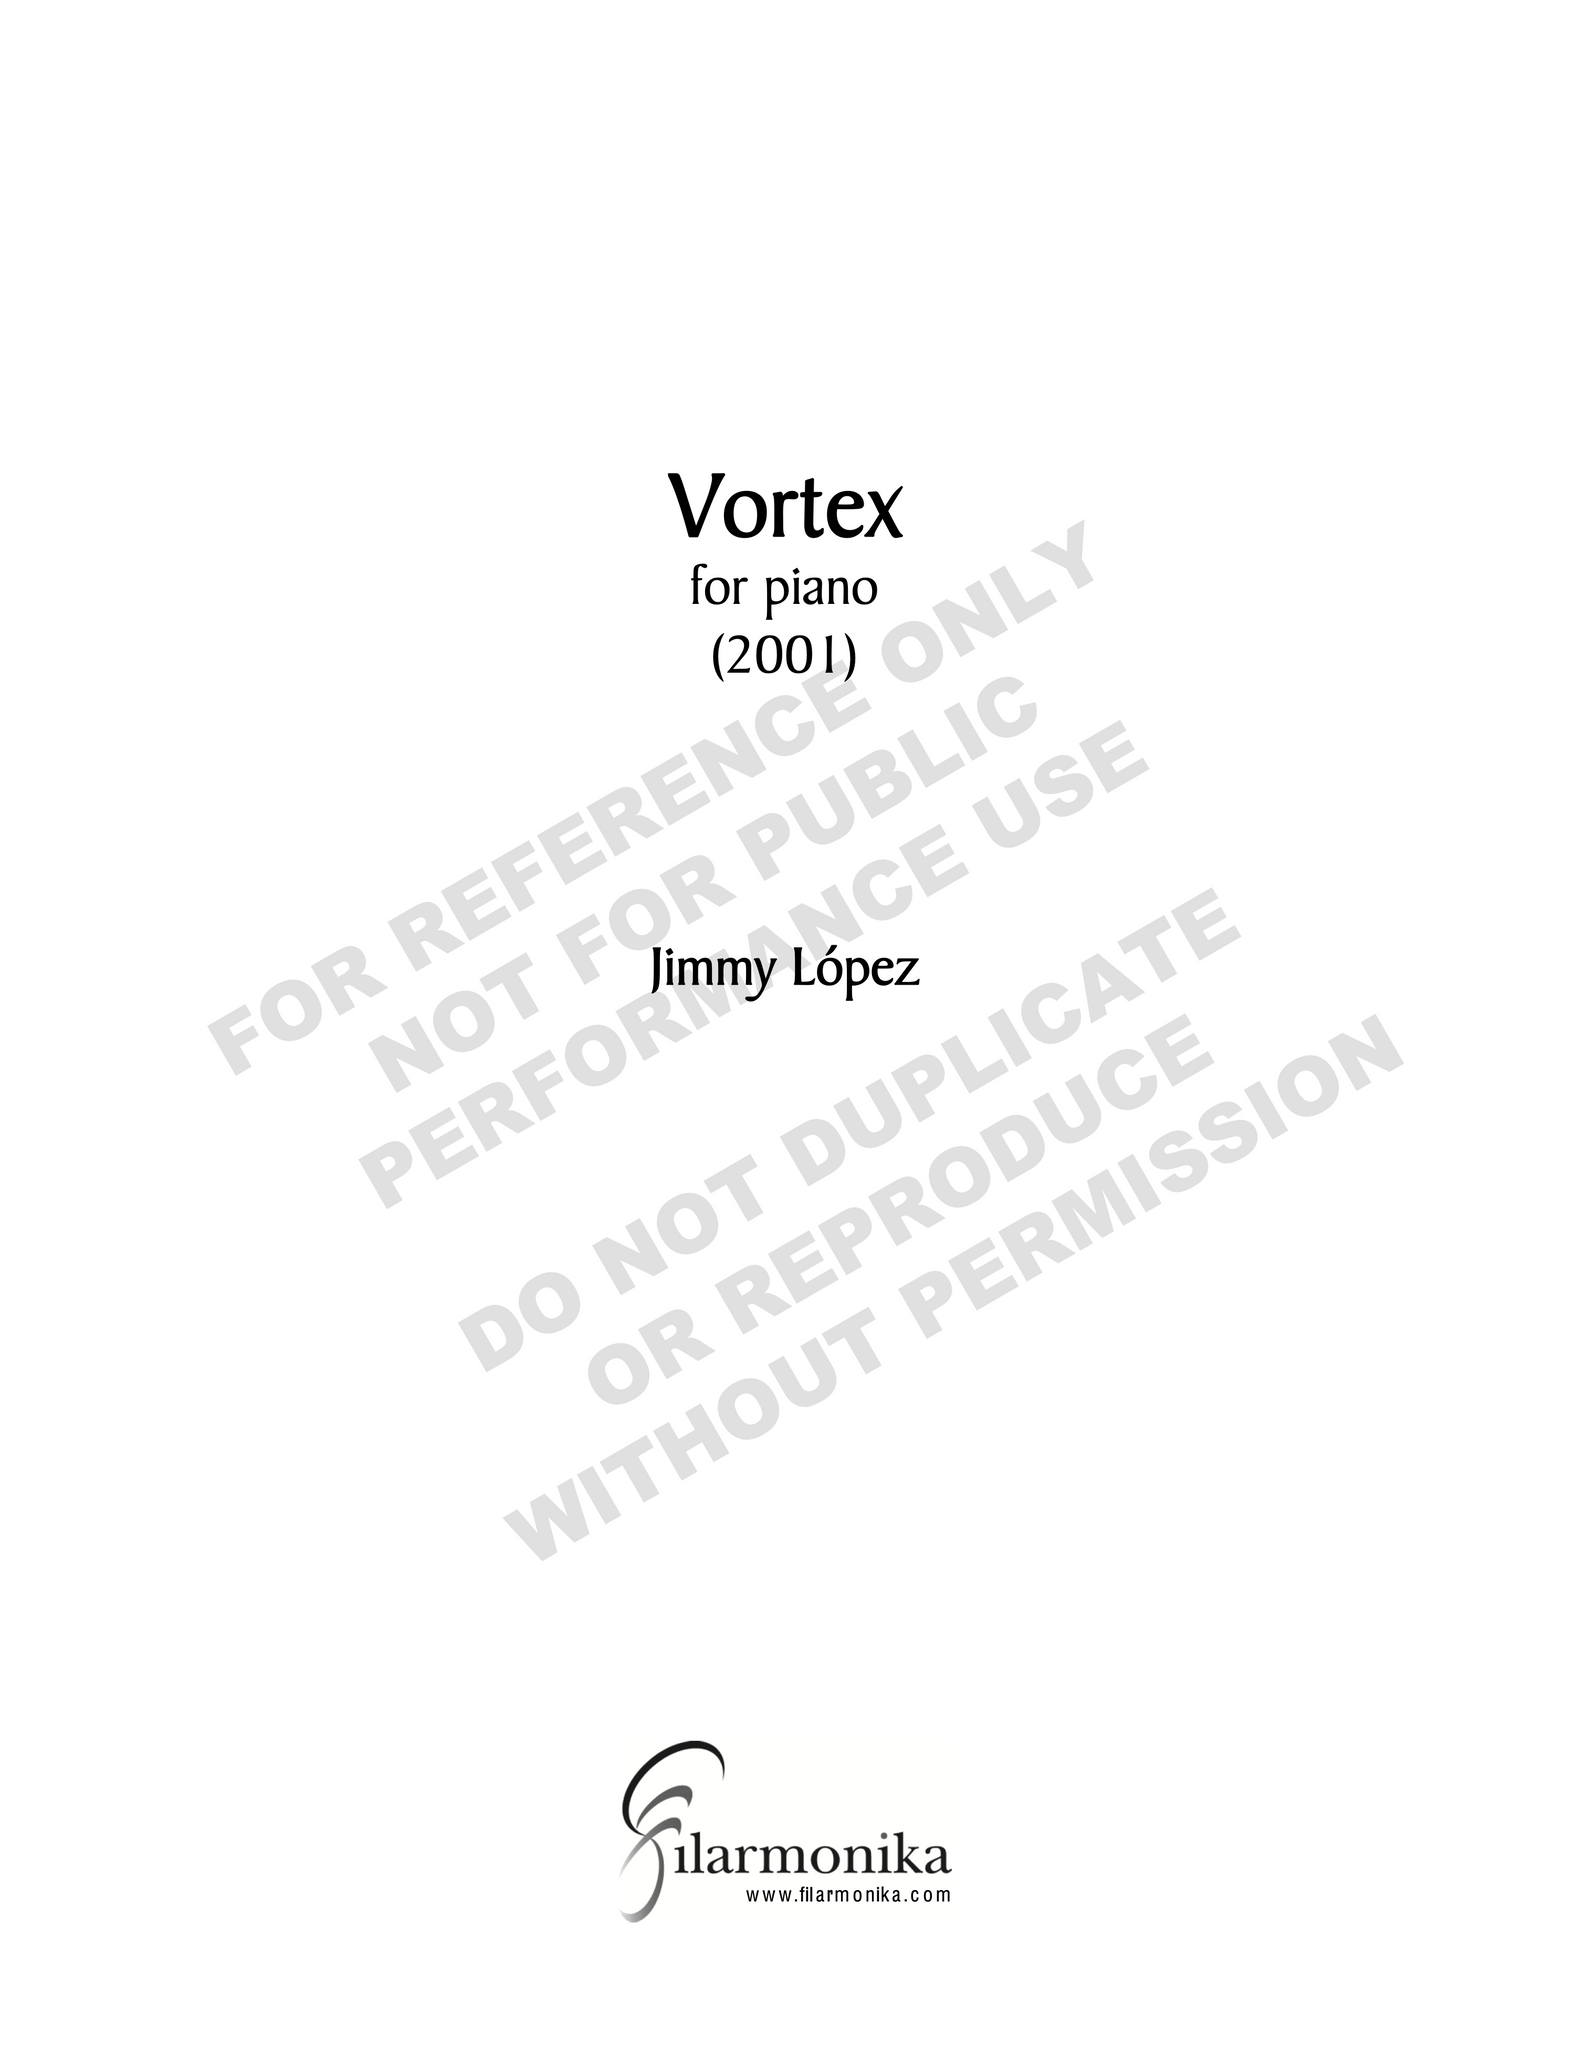 Vortex, for solo piano